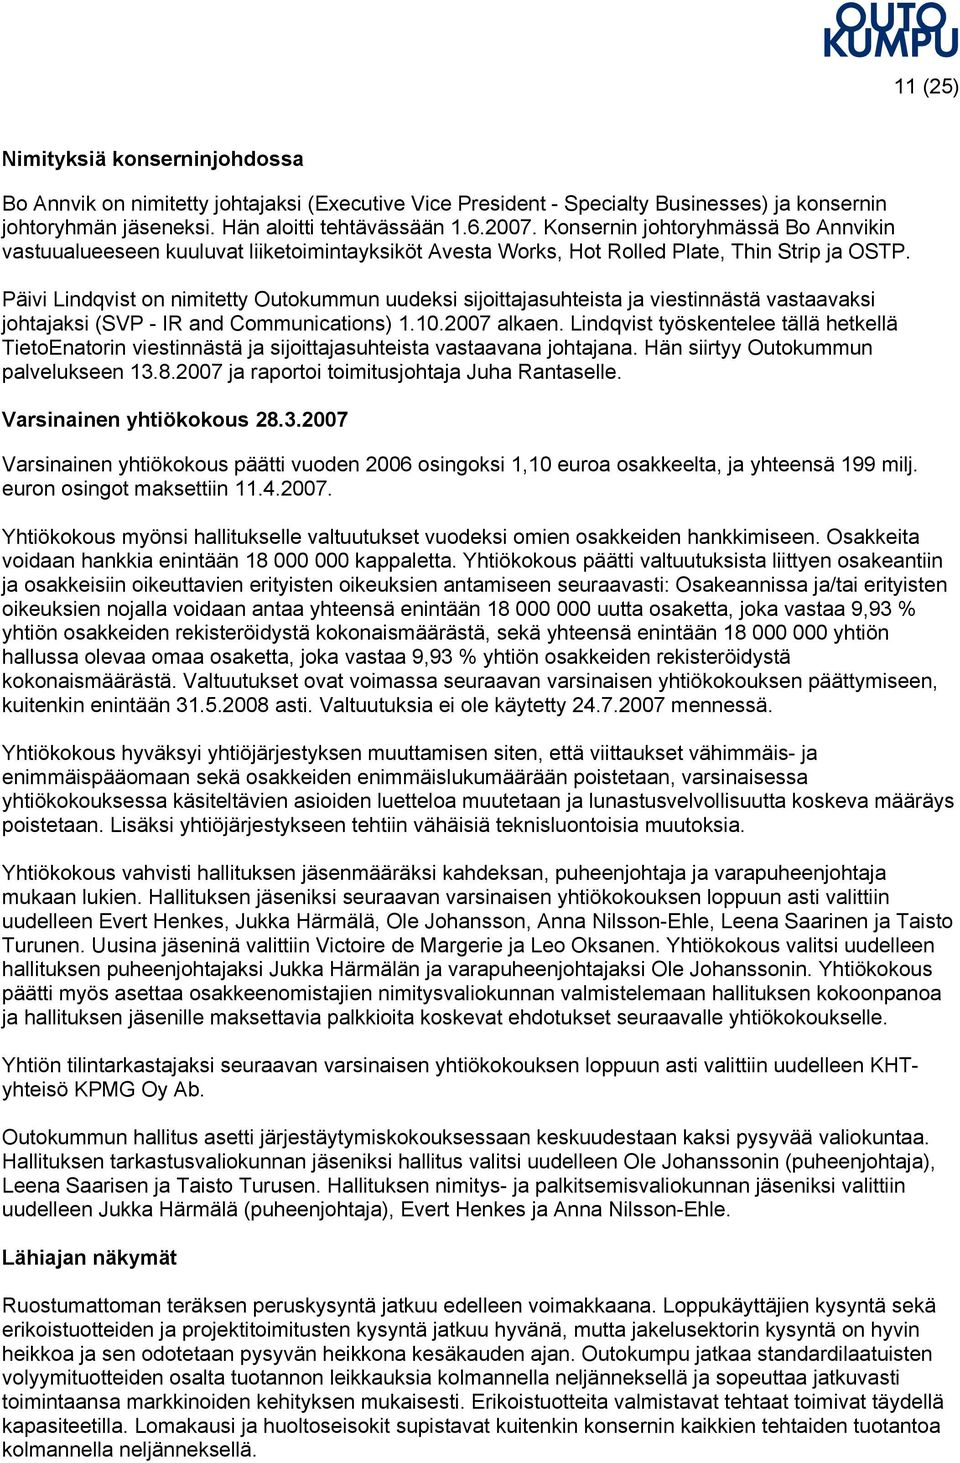 Päivi Lindqvist on nimitetty Outokummun uudeksi sijoittajasuhteista ja viestinnästä vastaavaksi johtajaksi (SVP - IR and Communications) 1.10.2007 alkaen.